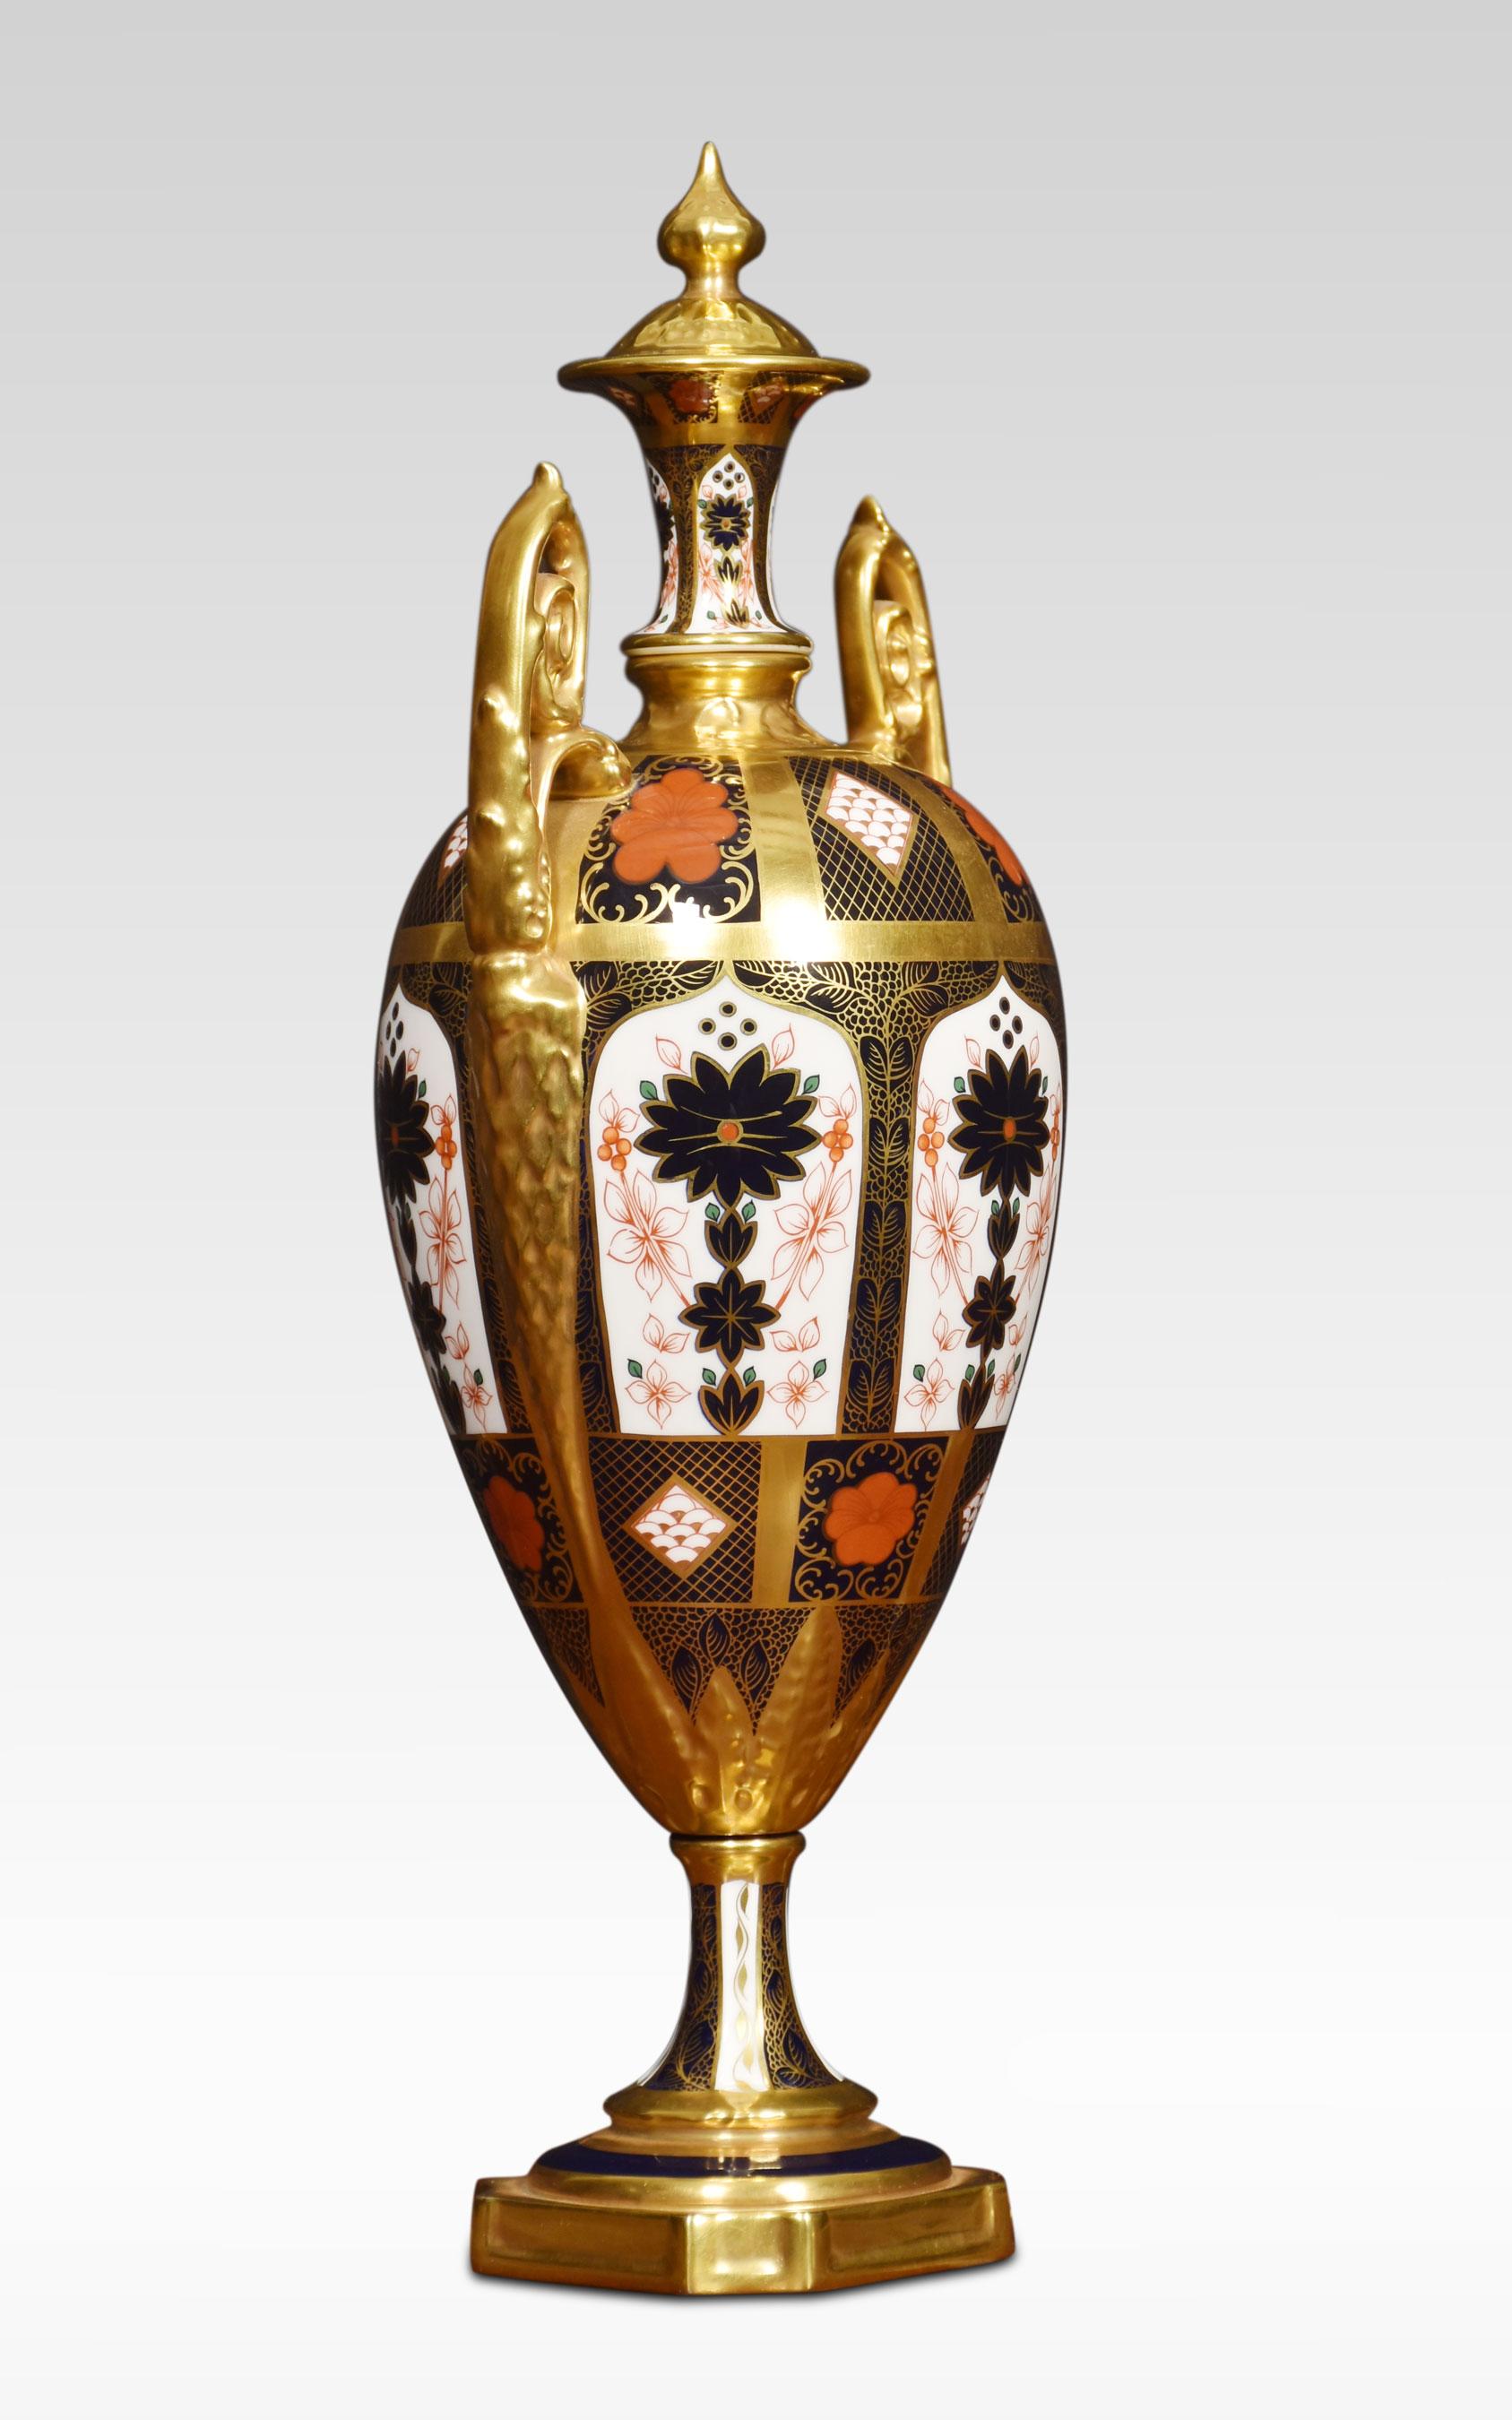 Royal Crown Derby sehr handbemaltes Paar Imari-Porzellan-Doppelgriffvasen in Form einer Urne mit hohem Deckel, mit 22 Karat Goldbändern. Erhöht auf achteckigen Sockeln. (eine Vase hat einen leichten Haarriss im Deckel).
Abmessungen
Höhe 17